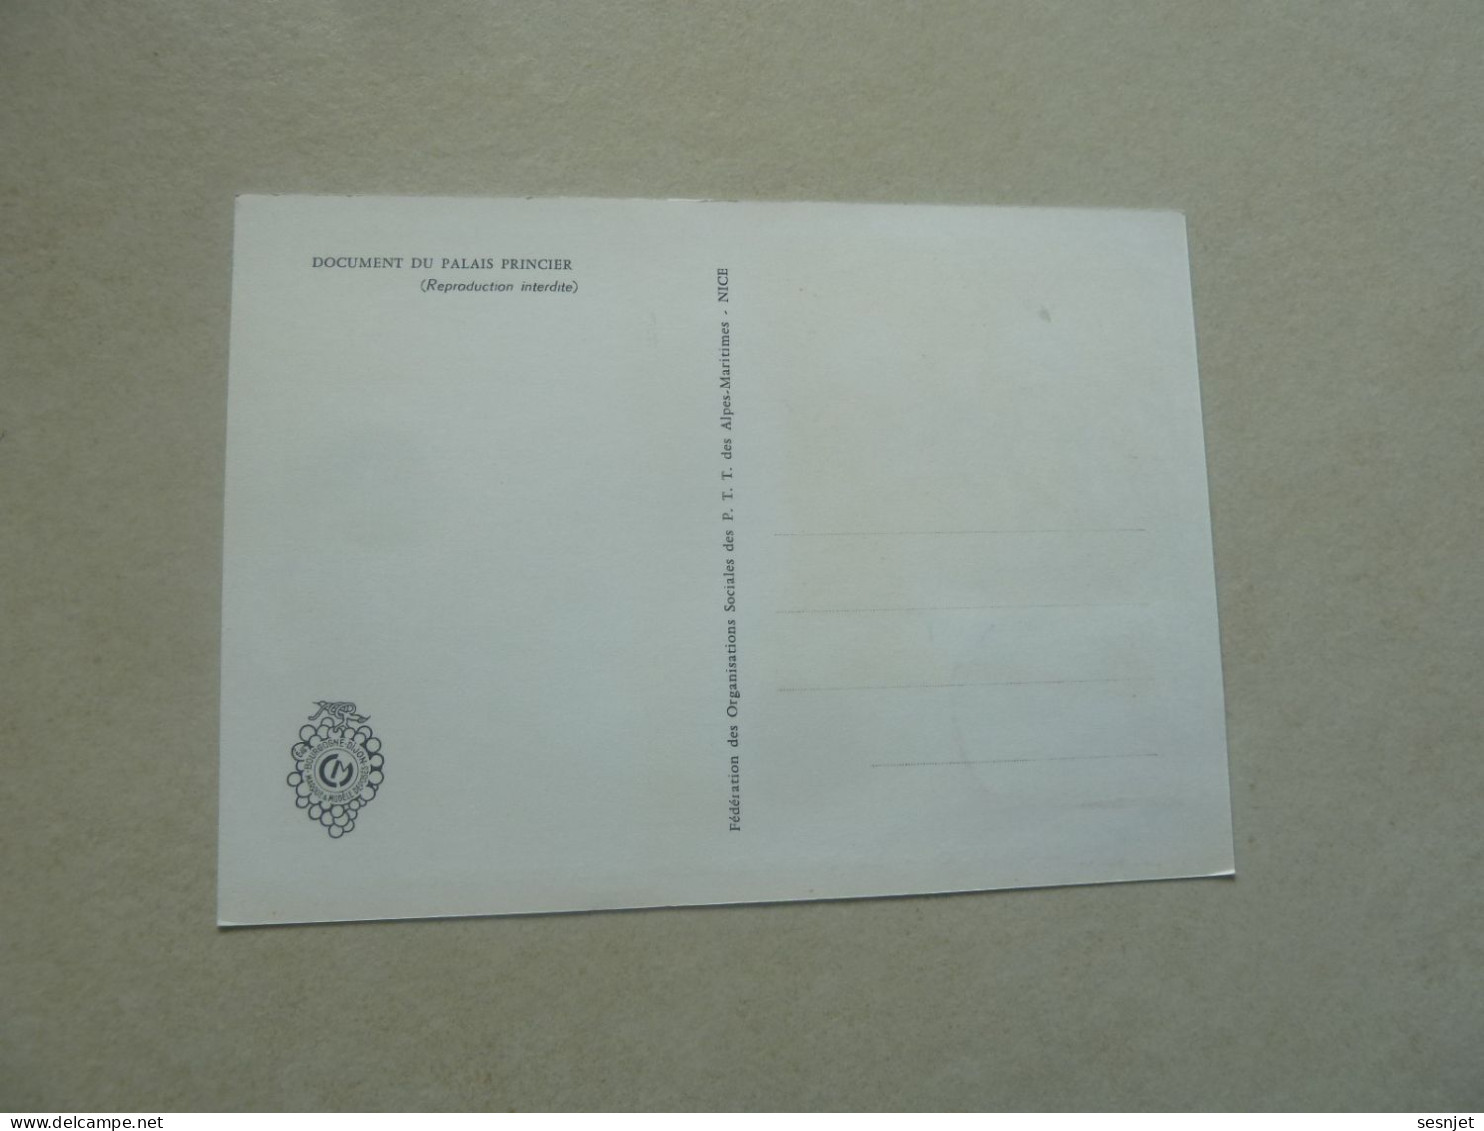 Monaco - Le Palais Au 18ème Siècle - 12c. - Yt 677 - Carte Premier Jour D'Emission - Année 1966 - - Cartoline Maximum